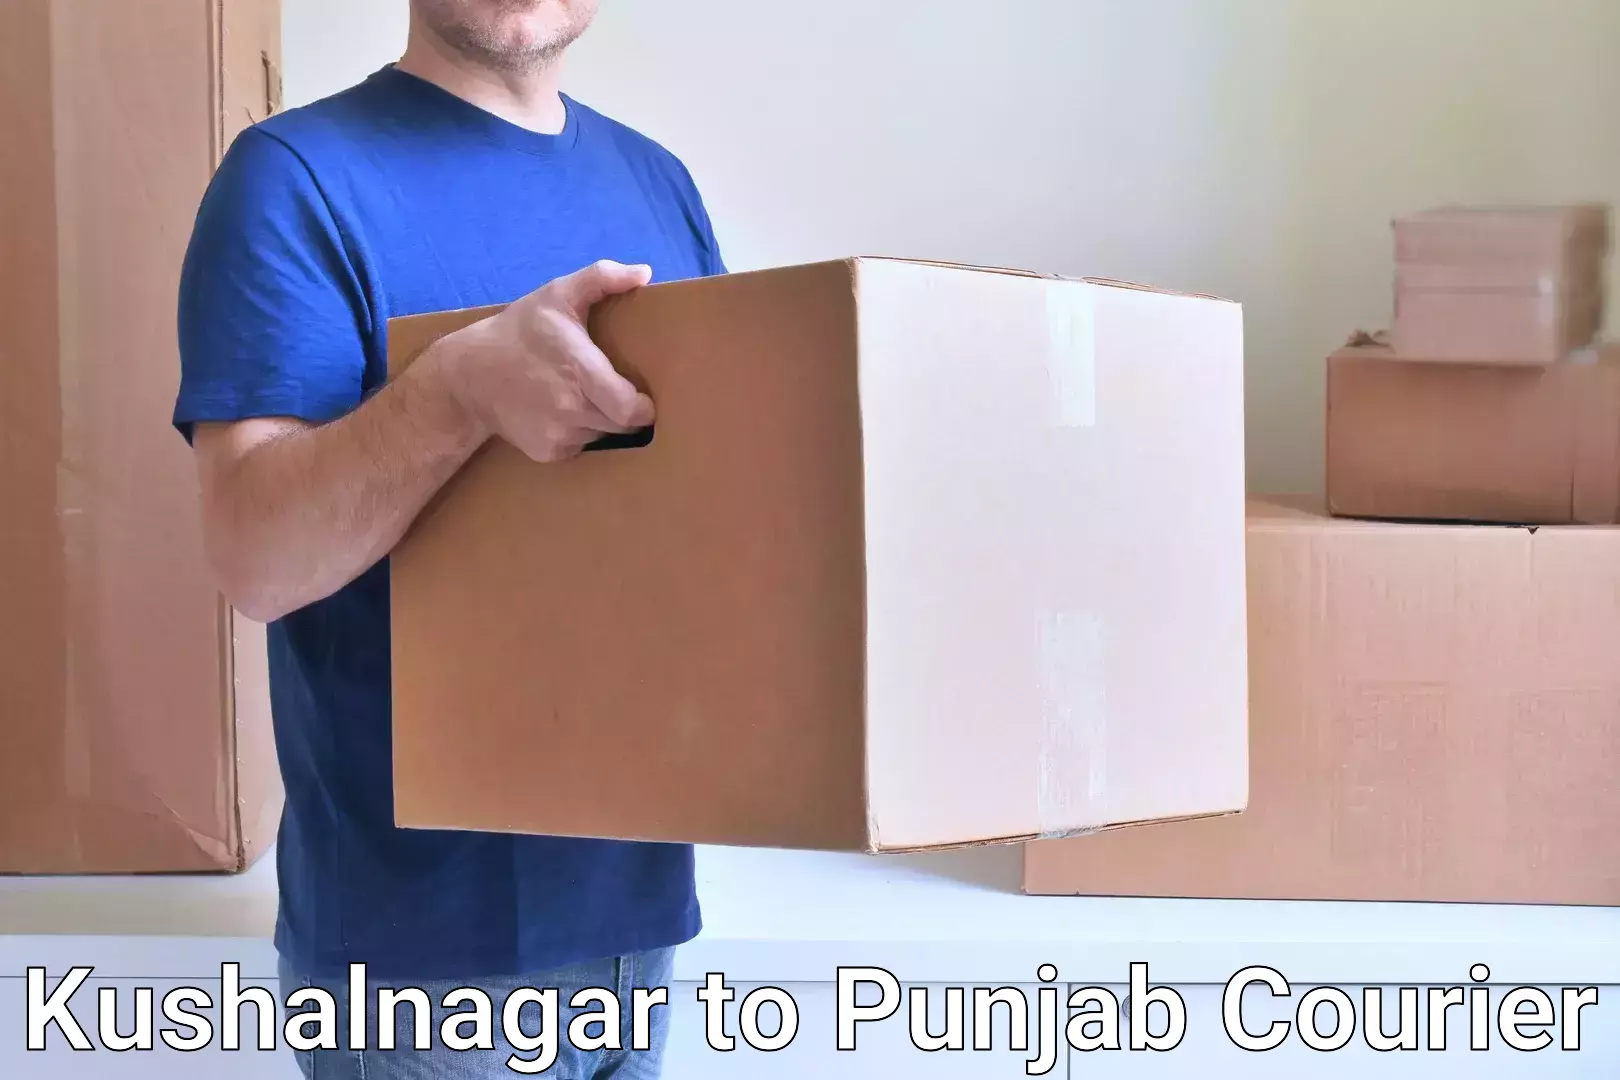 Package tracking Kushalnagar to Punjab